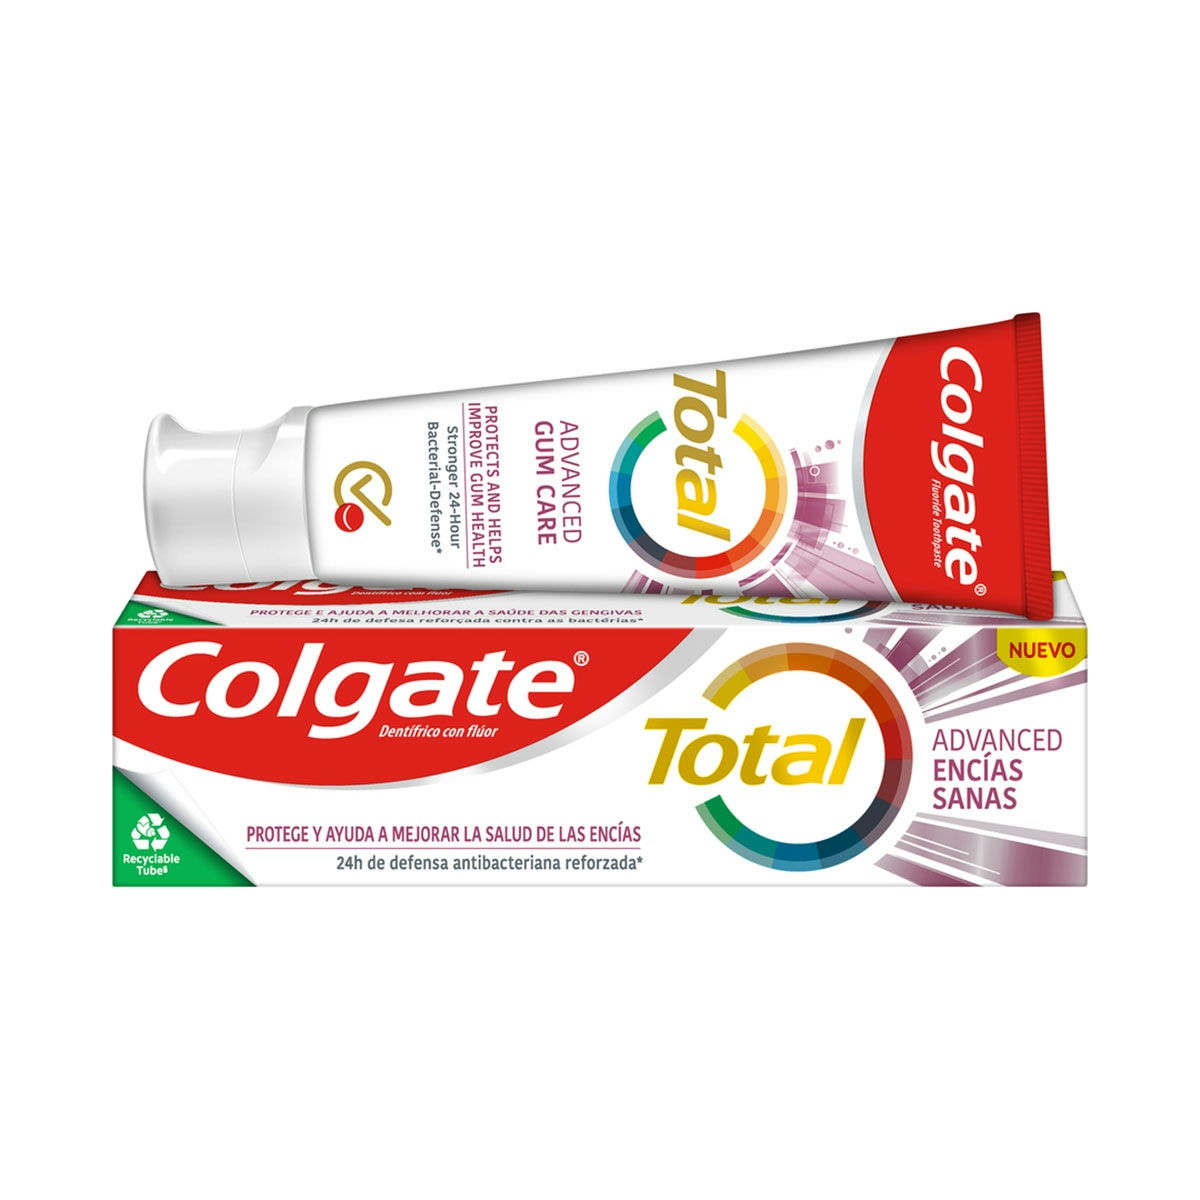 Pasta de dientes Colgate Total Advanced Encías Sanas 24h de protección completa 75ml